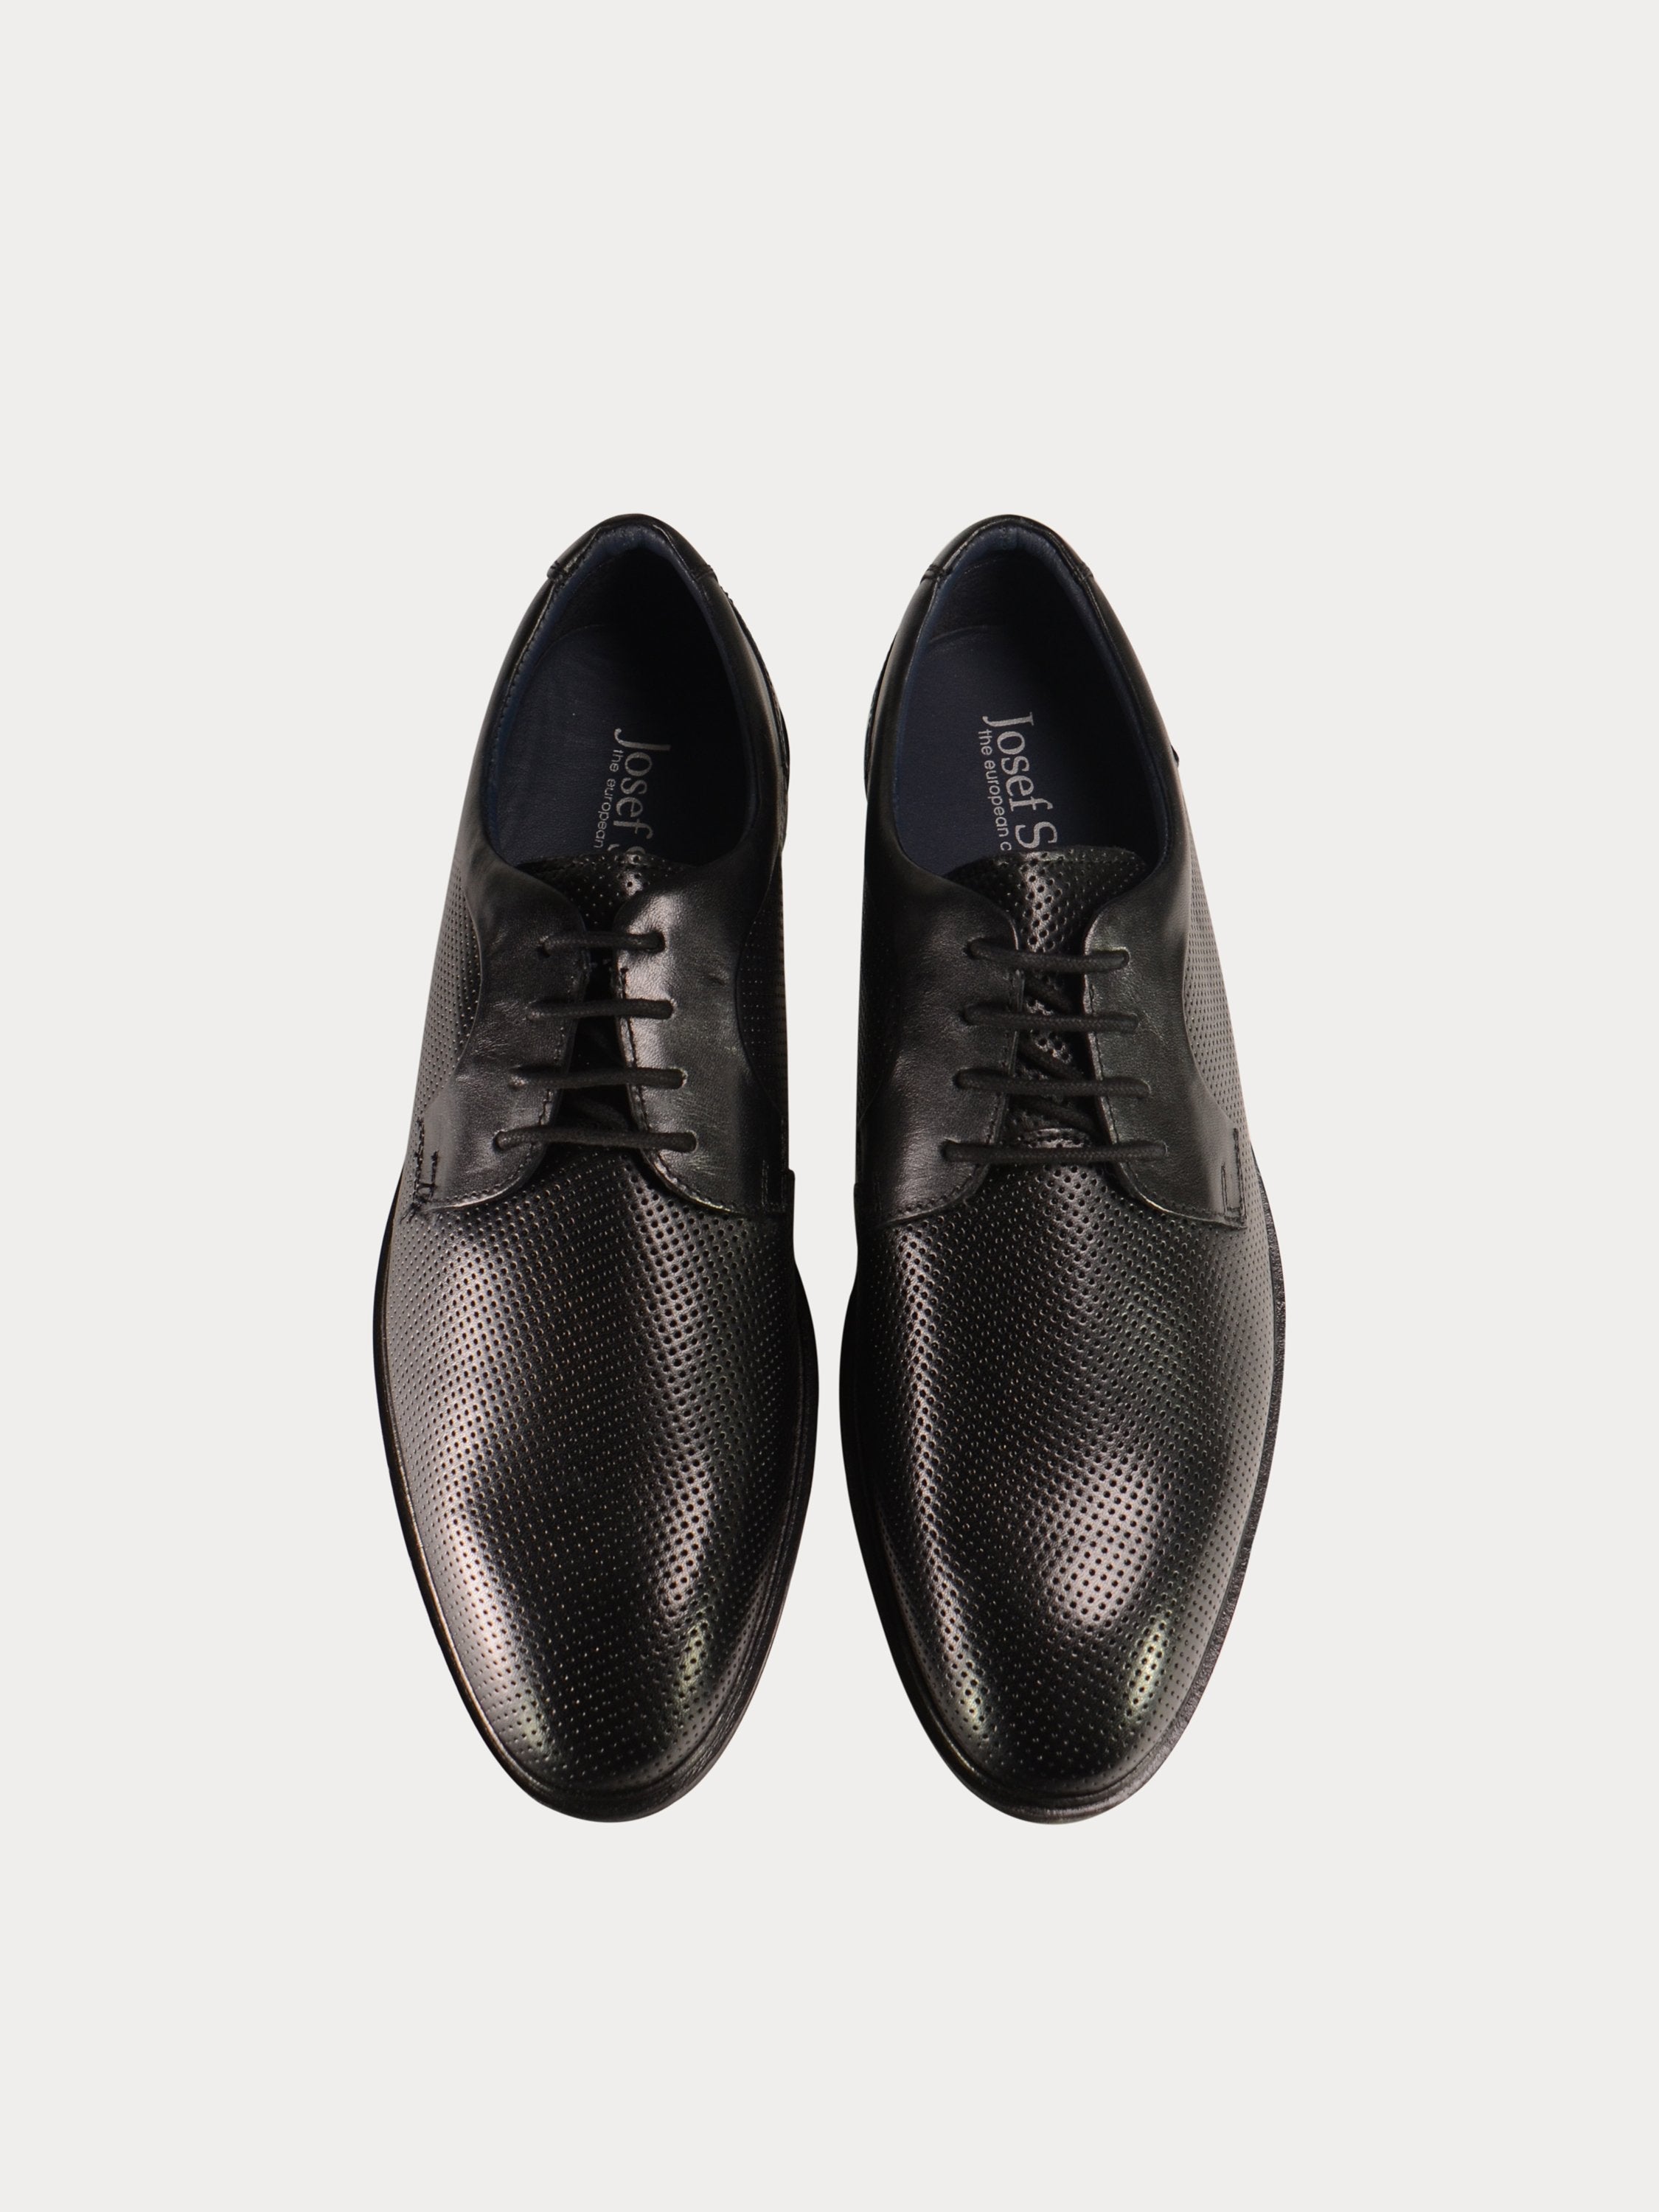 Josef Seibel Men's Jonathan 09 Formal Leather Shoes #color_Black